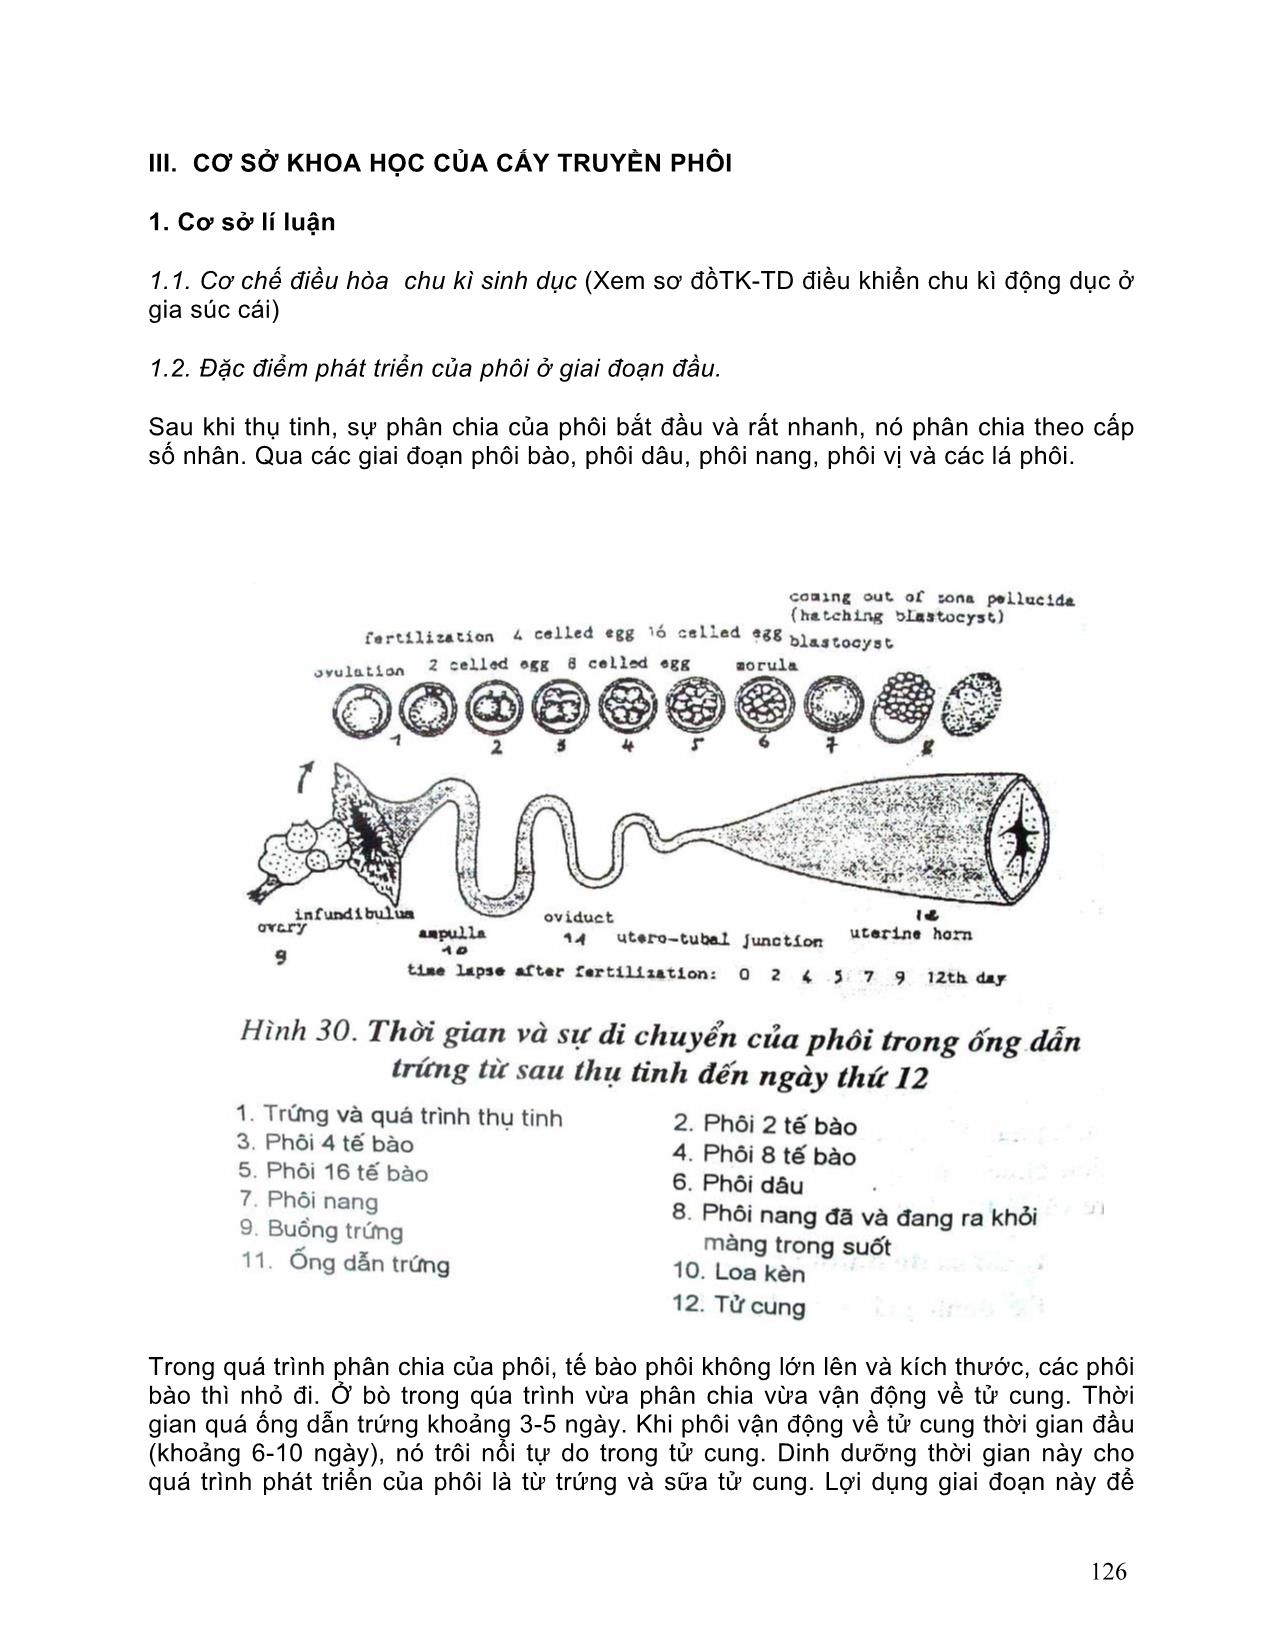 Giáo trình Kỹ thuật gây rụng trứng và cấy truyền phôi cho gia súc trang 3